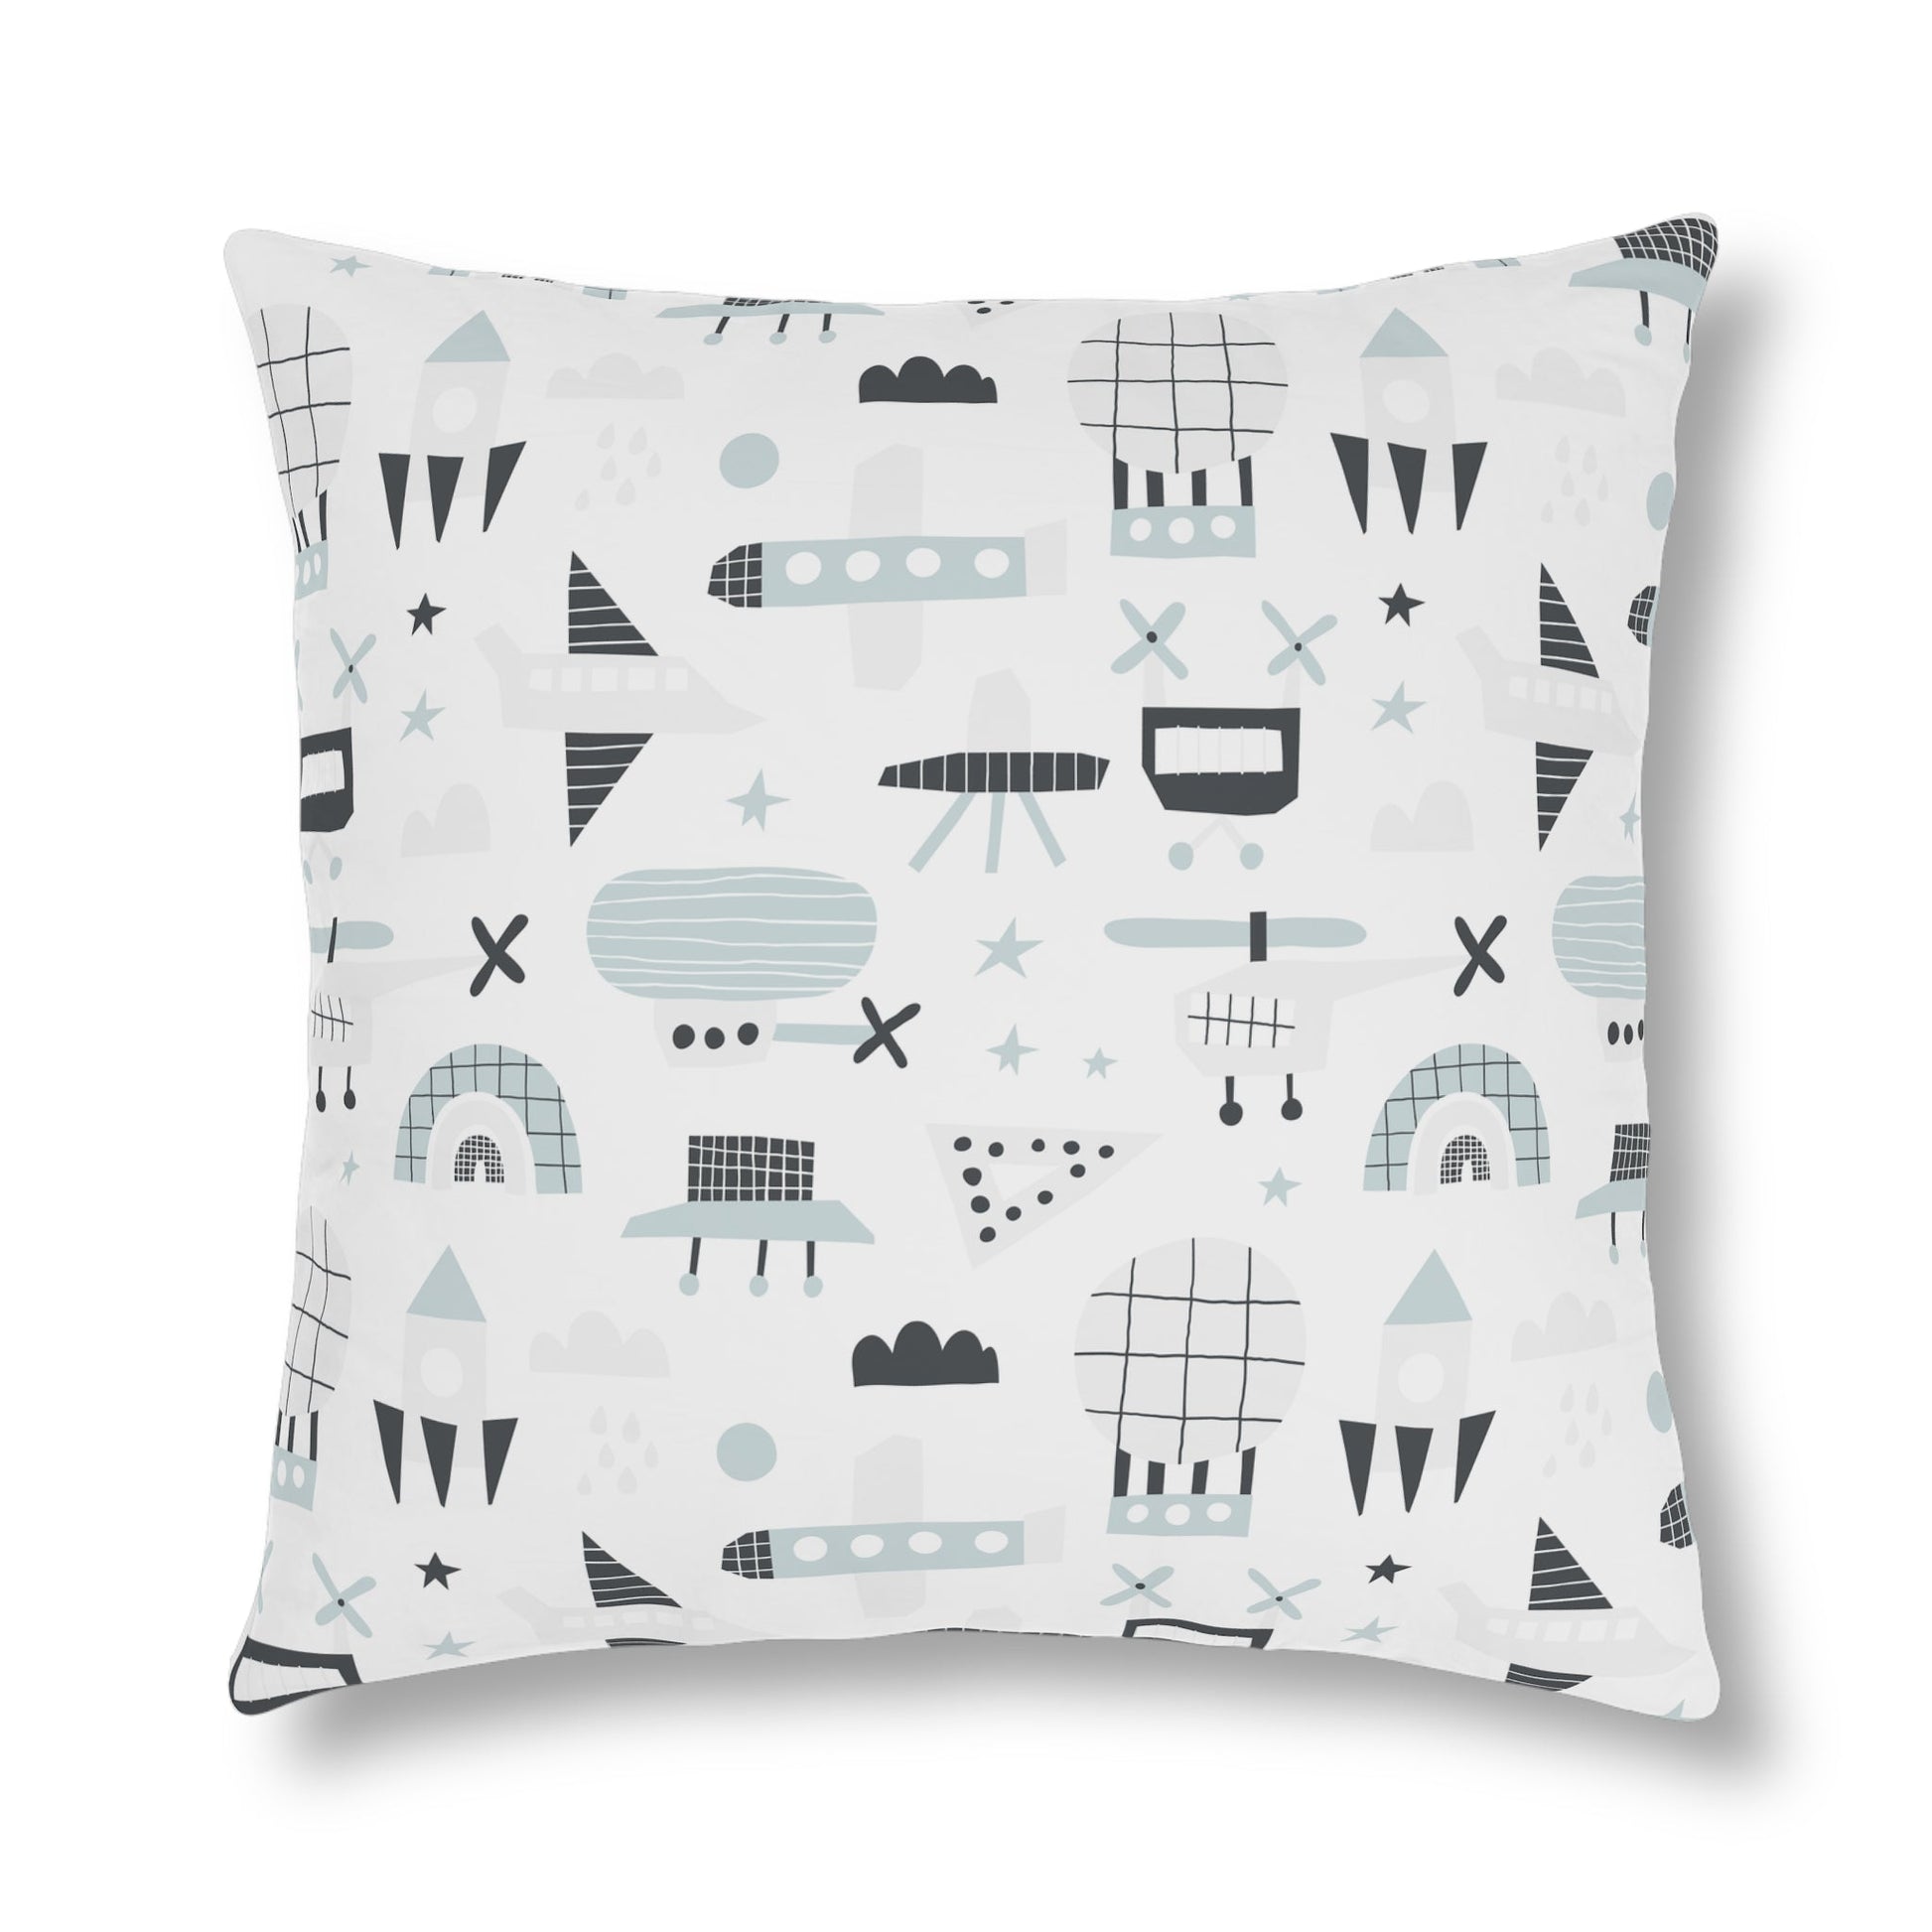 Aviation Design Waterproof Pillows-Shalav5